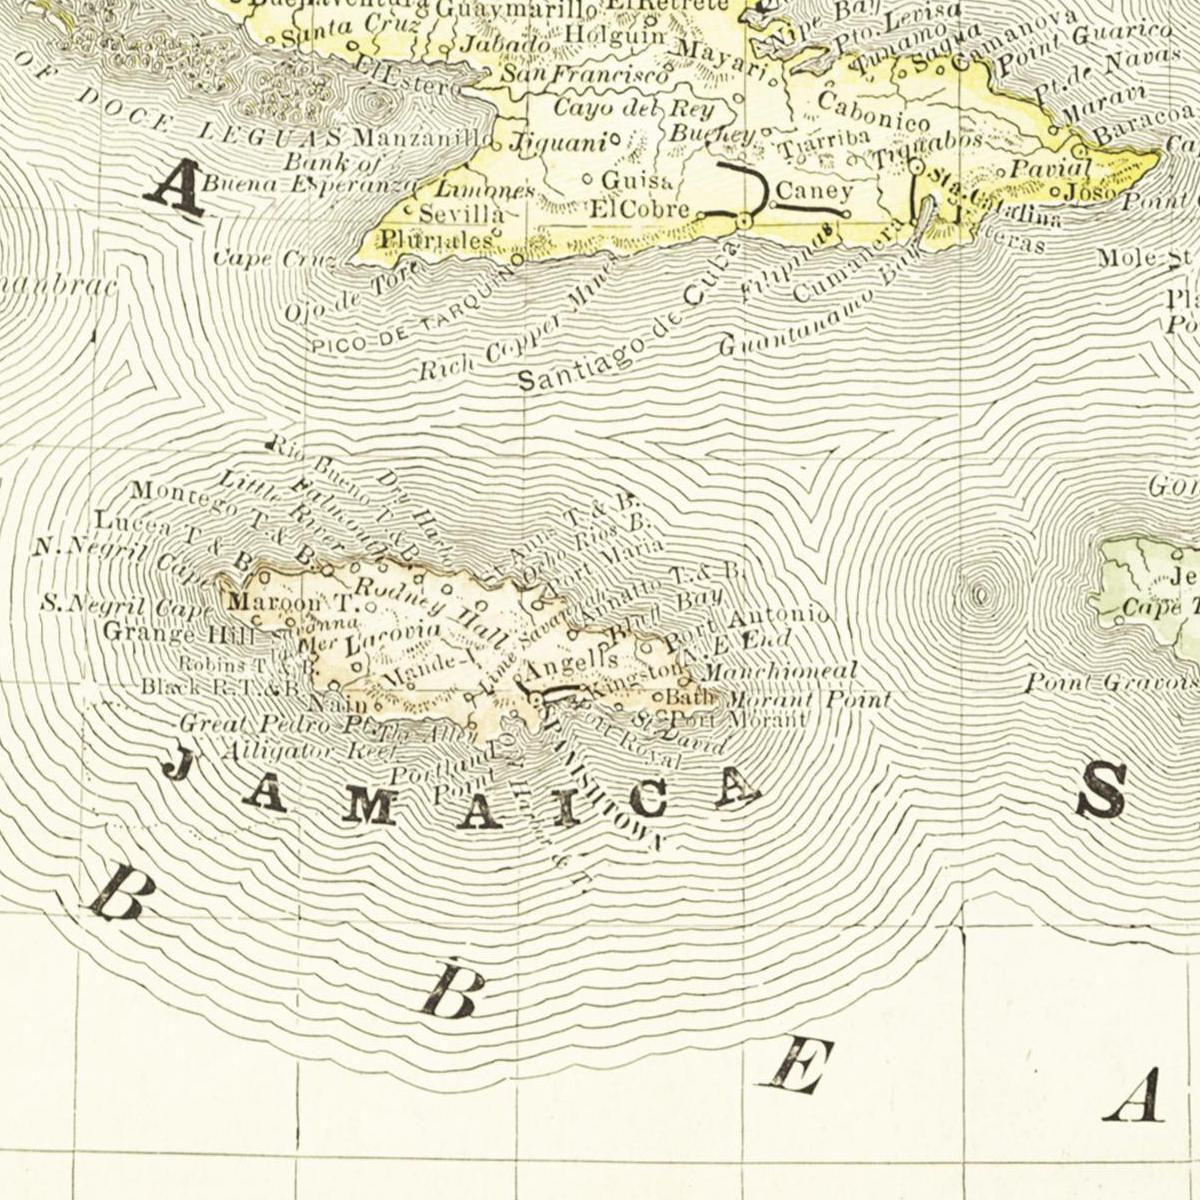 Historische Landkarte Kuba um 1882